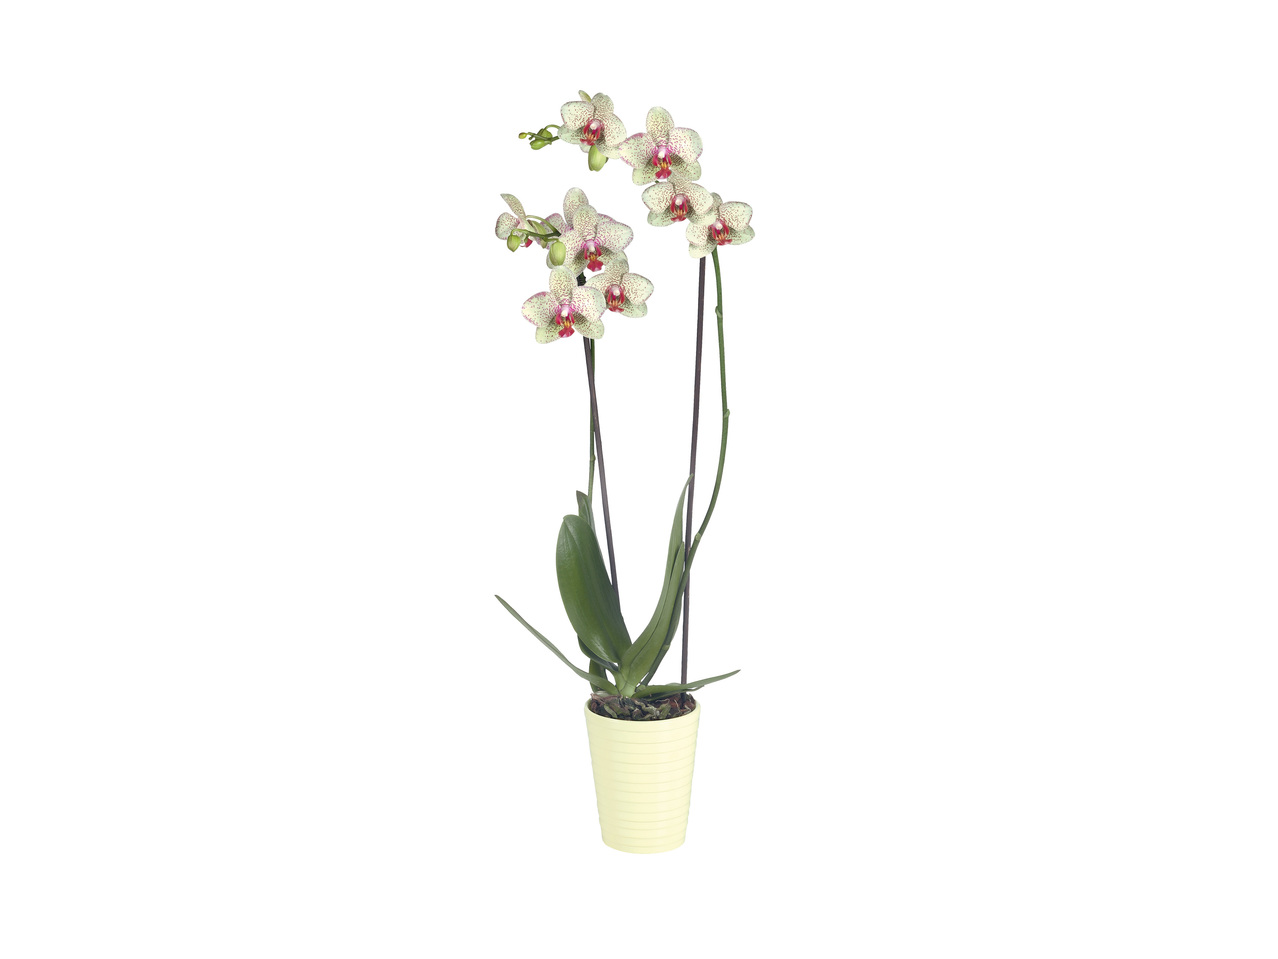 Phalaenopsis Vaso 12 cm